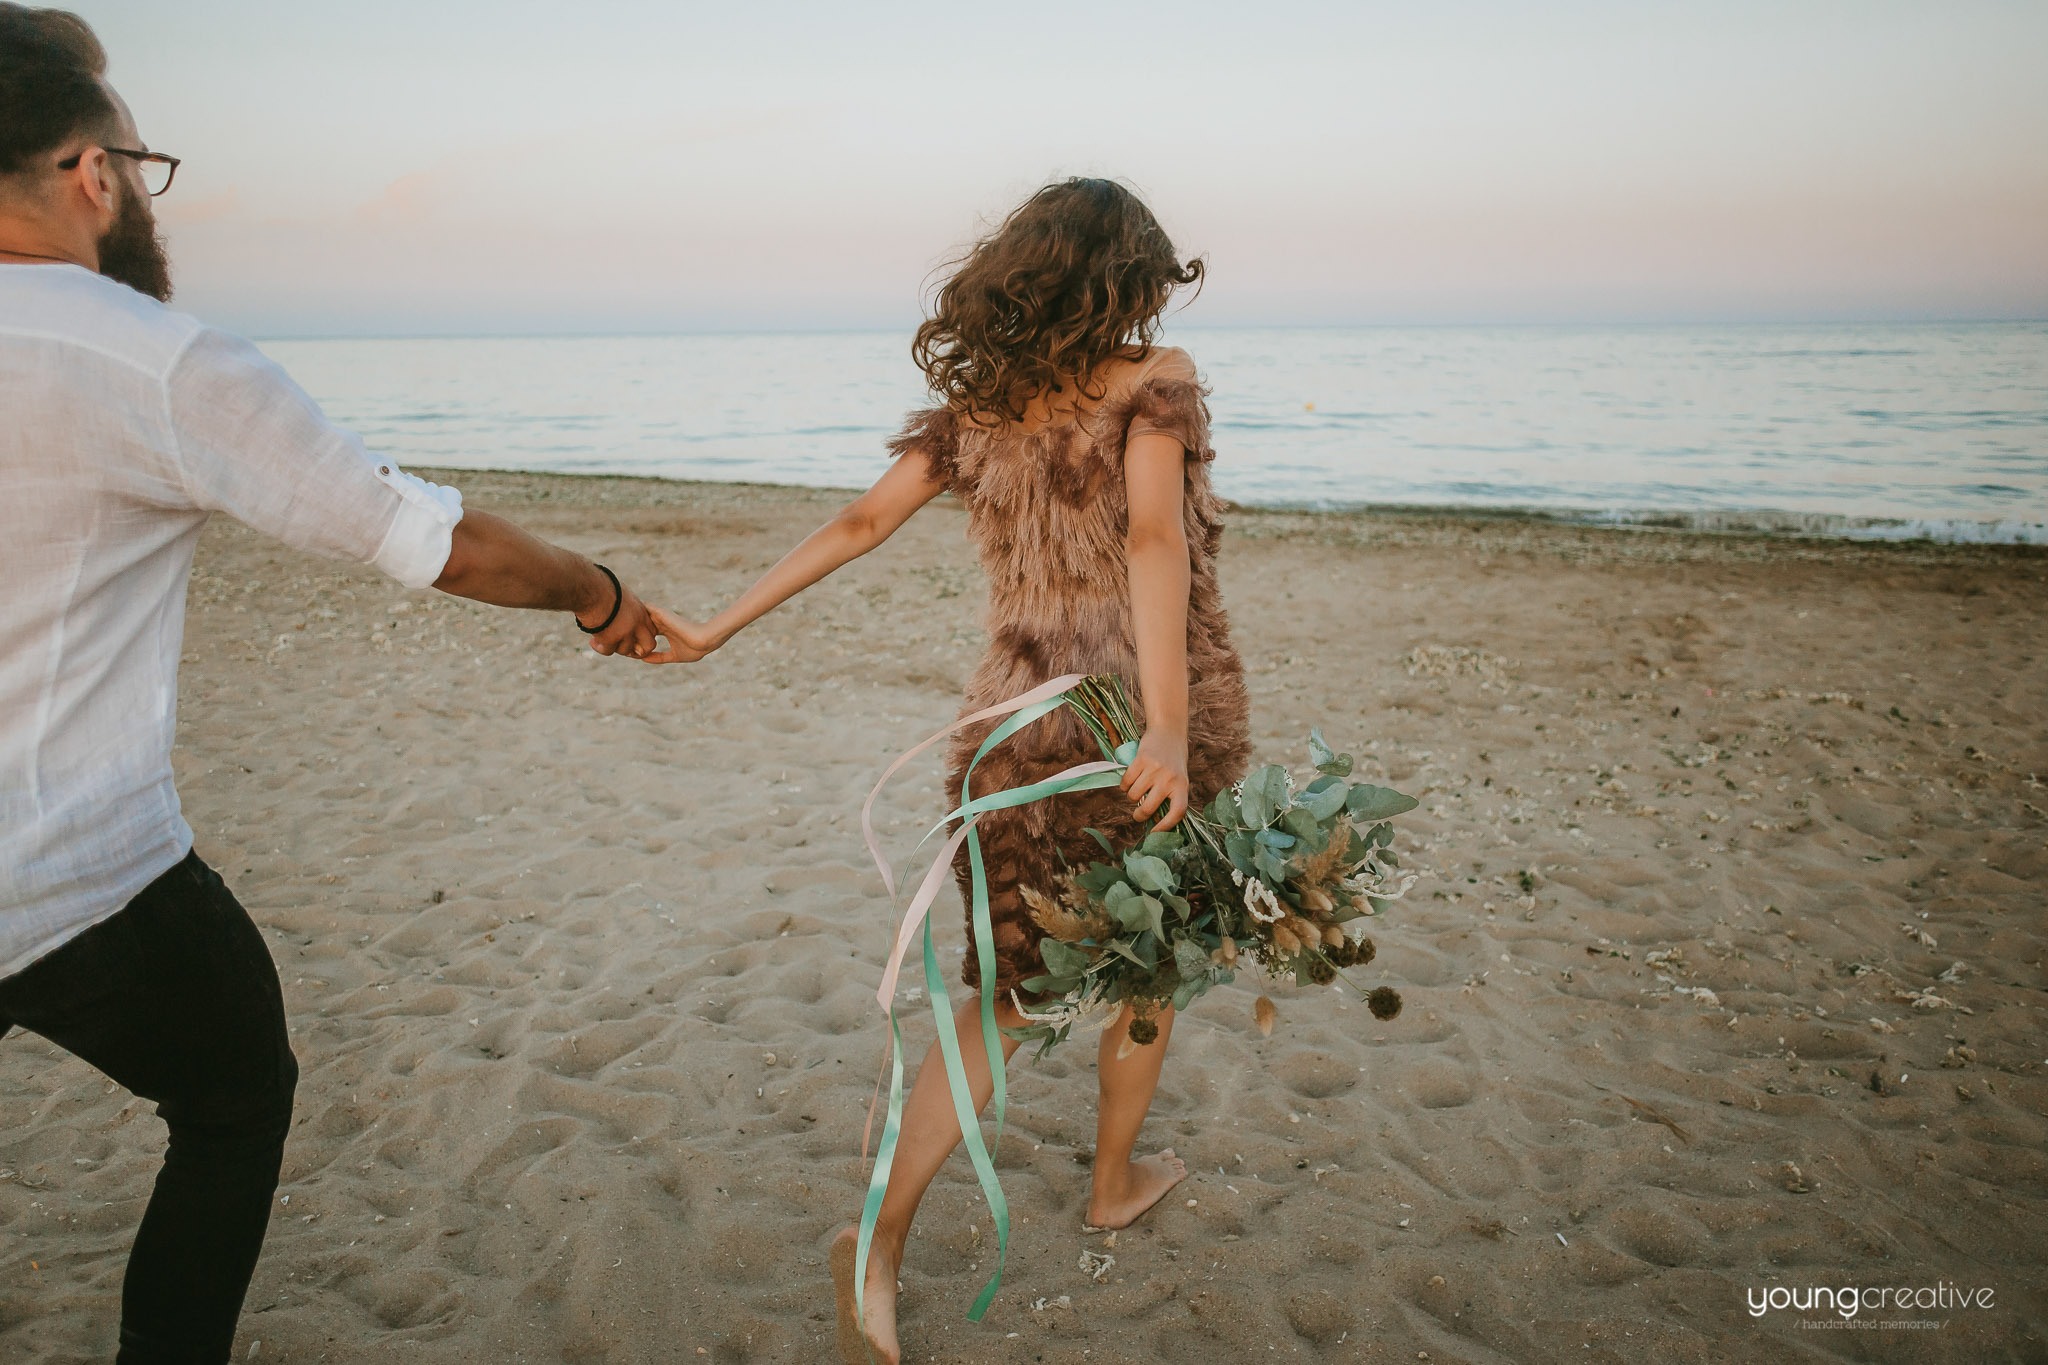 Nunta ta, regulile tale, acum mai mult ca niciodată | Elopement wedding | youngcreative.info